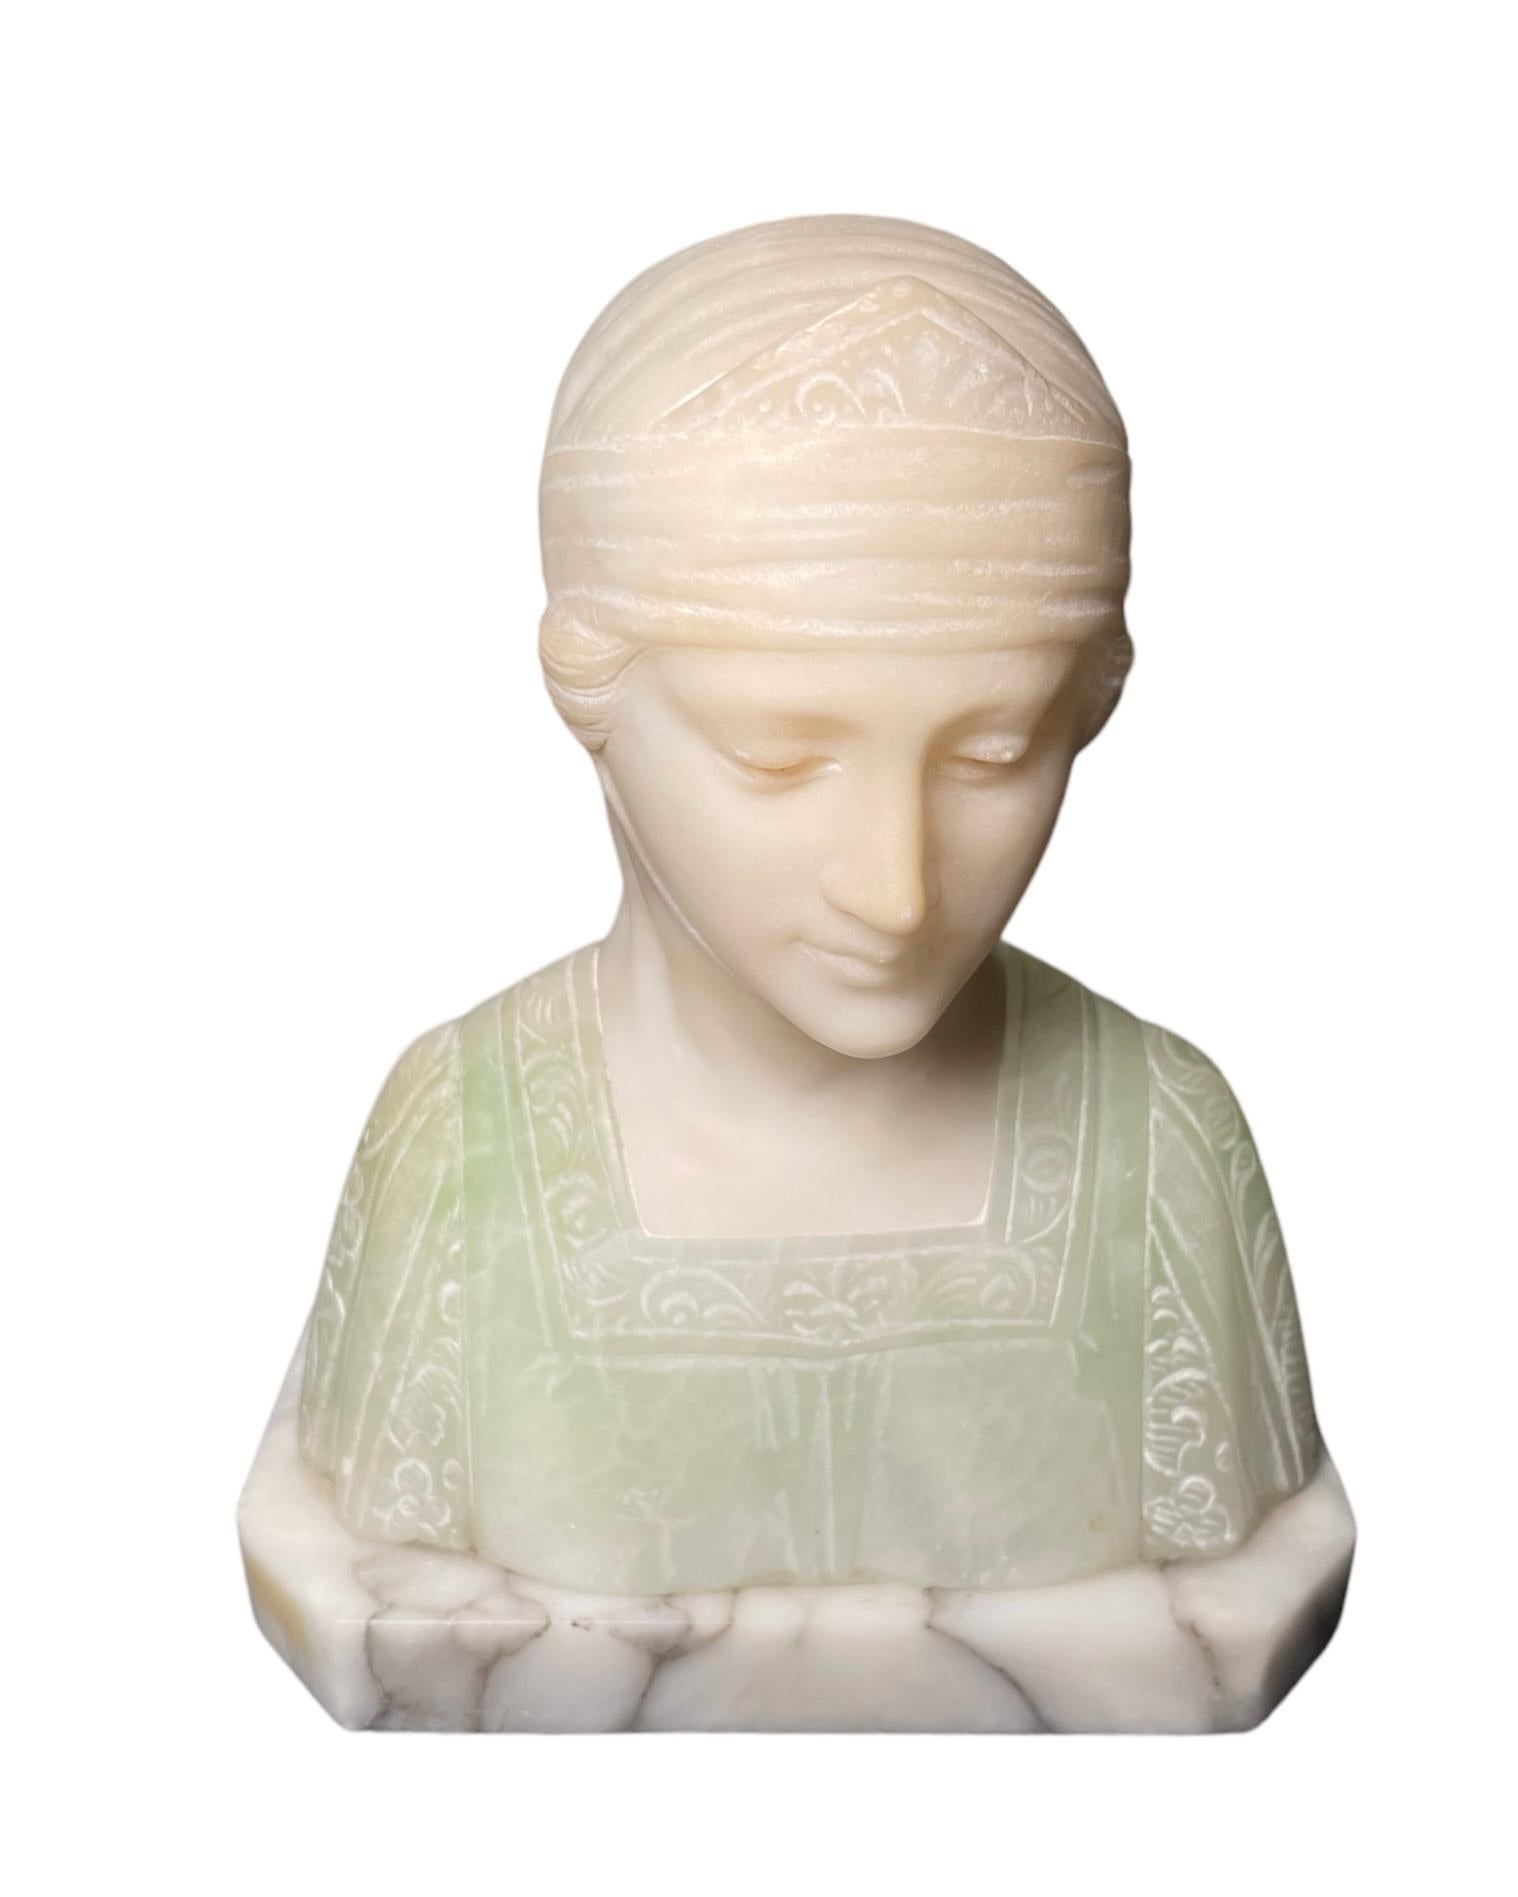 Il s'agit d'un buste de Béatrice en marbre et en albâtre. Il représente le buste, petit mais lourd, d'une dame italienne vêtue d'un costume de style Renaissance. La robe est vert menthe (elle symbolise l'espoir) avec des détails sculptés dans le col